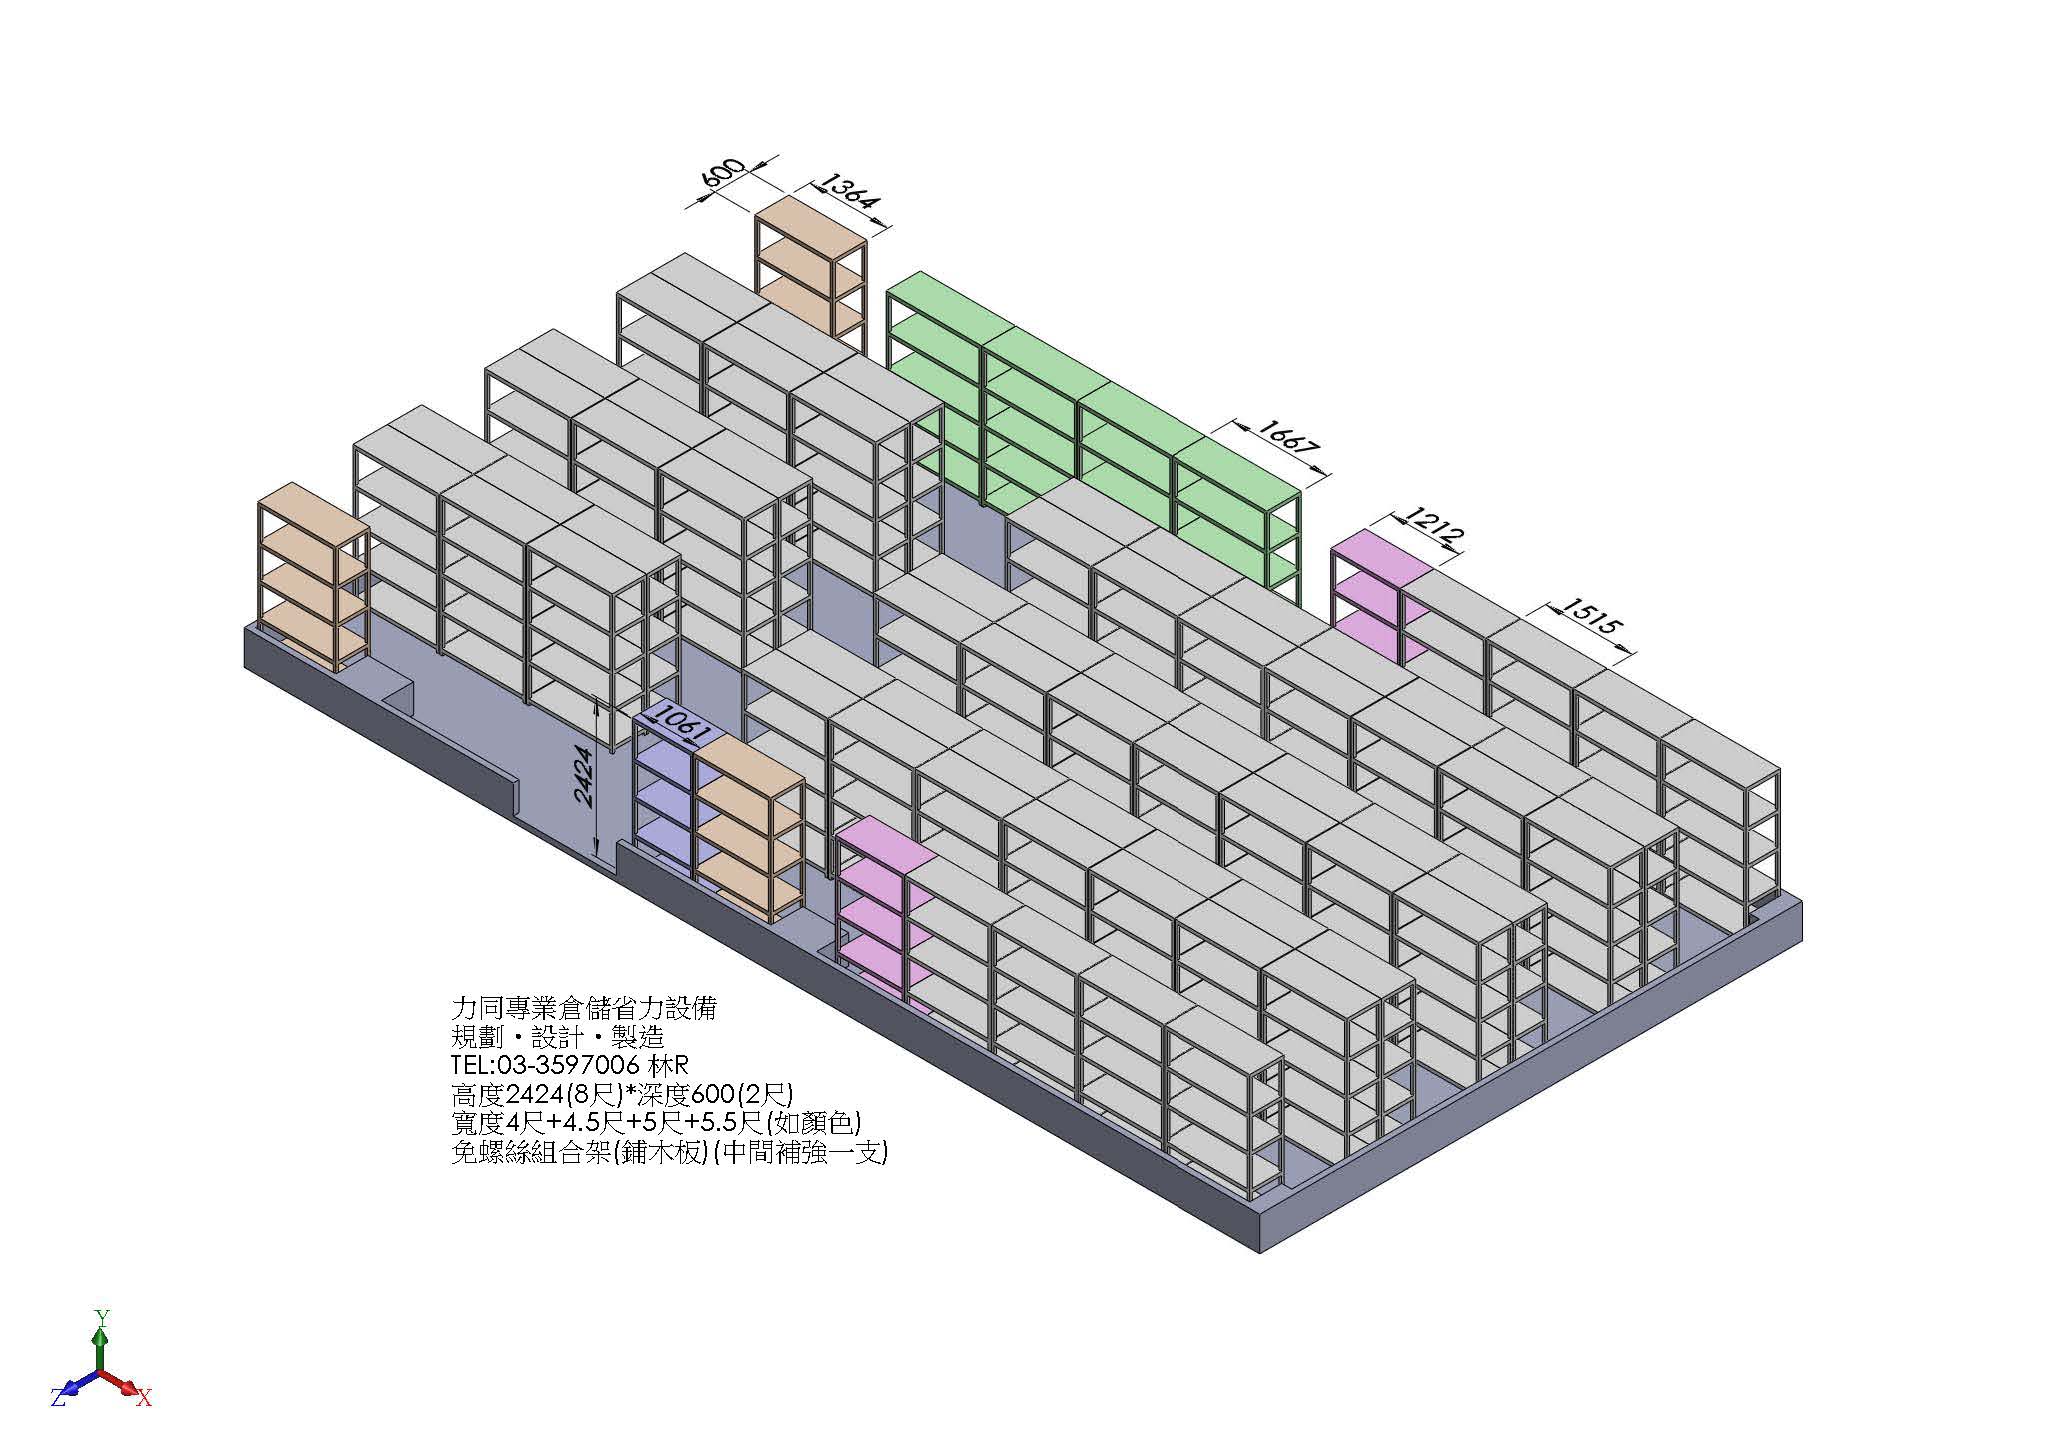 上島食品-奇麗灣觀光工廠-B1組合圖-方案2(3D)